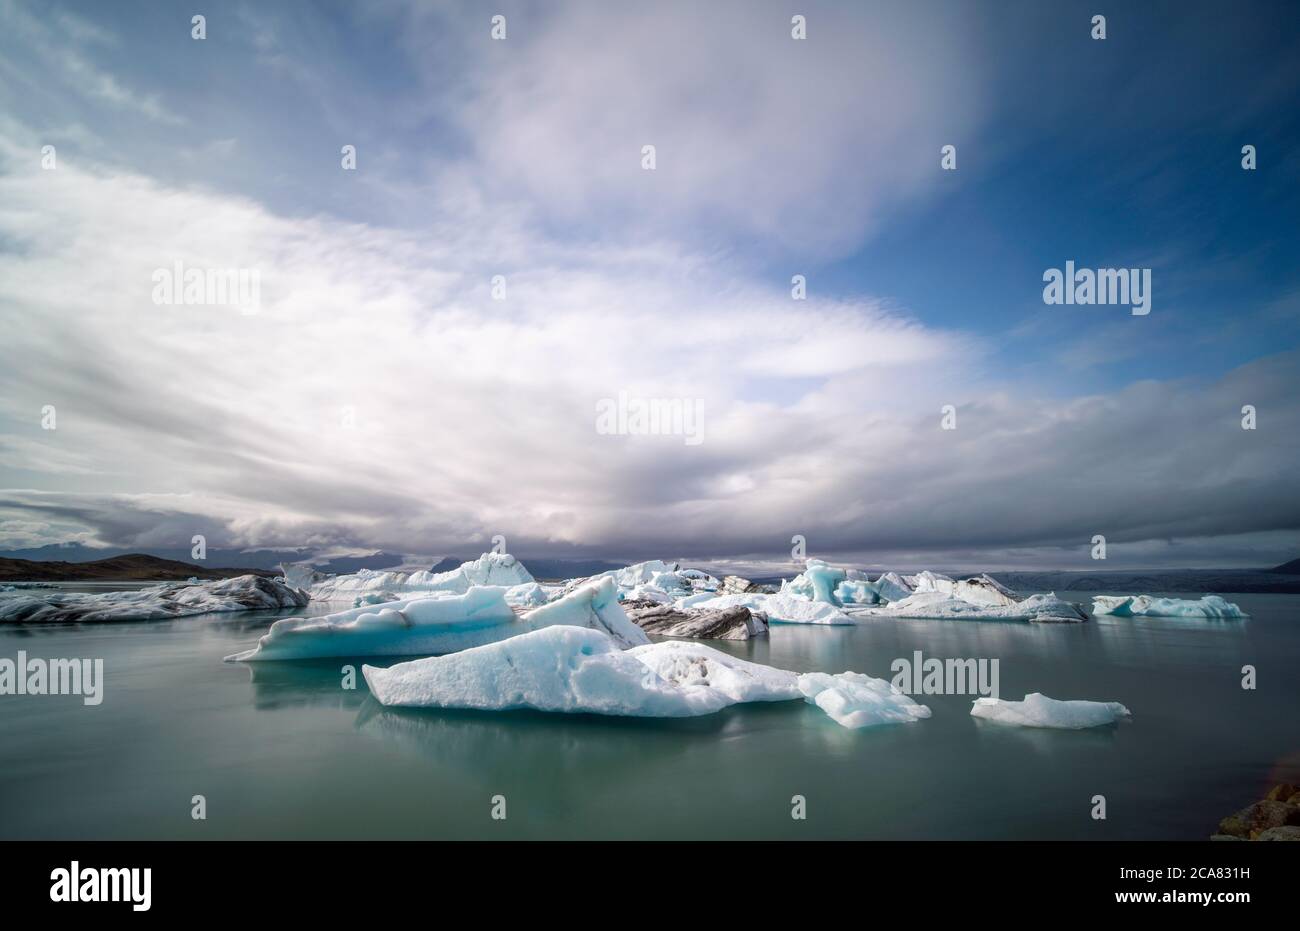 Iceland Lake with Melting Glaciers Stock Photo